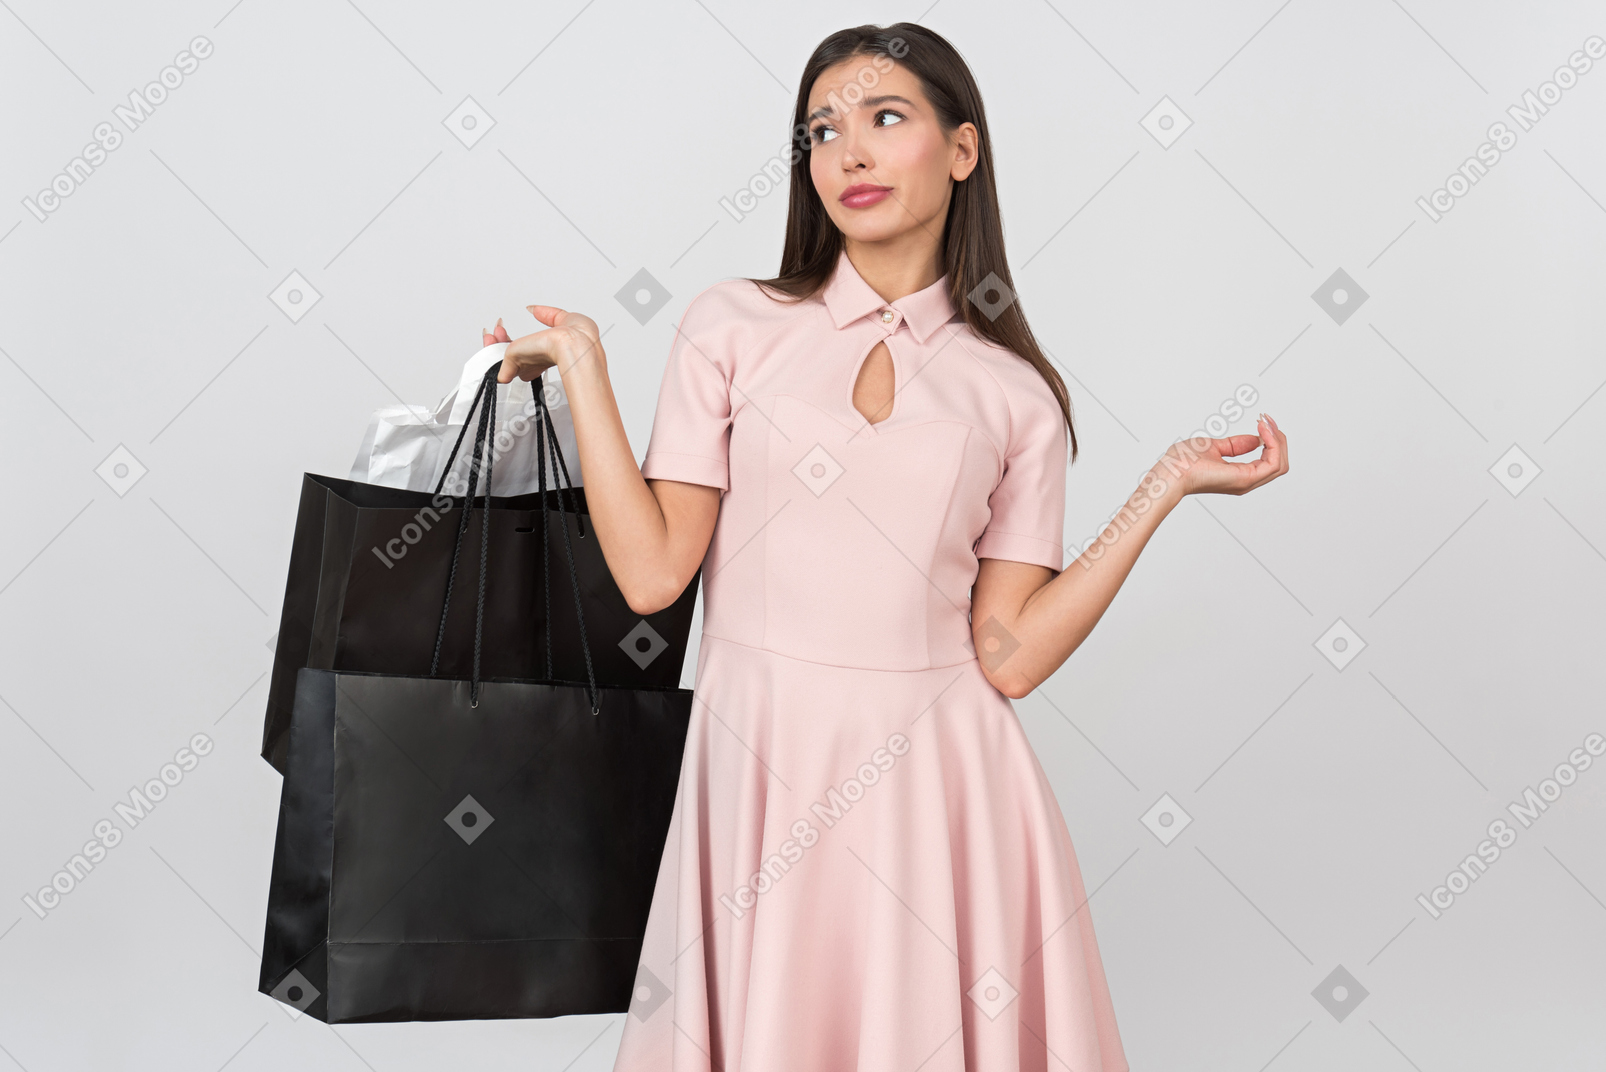 Frustrierte junge frau, die einkaufstaschen hält